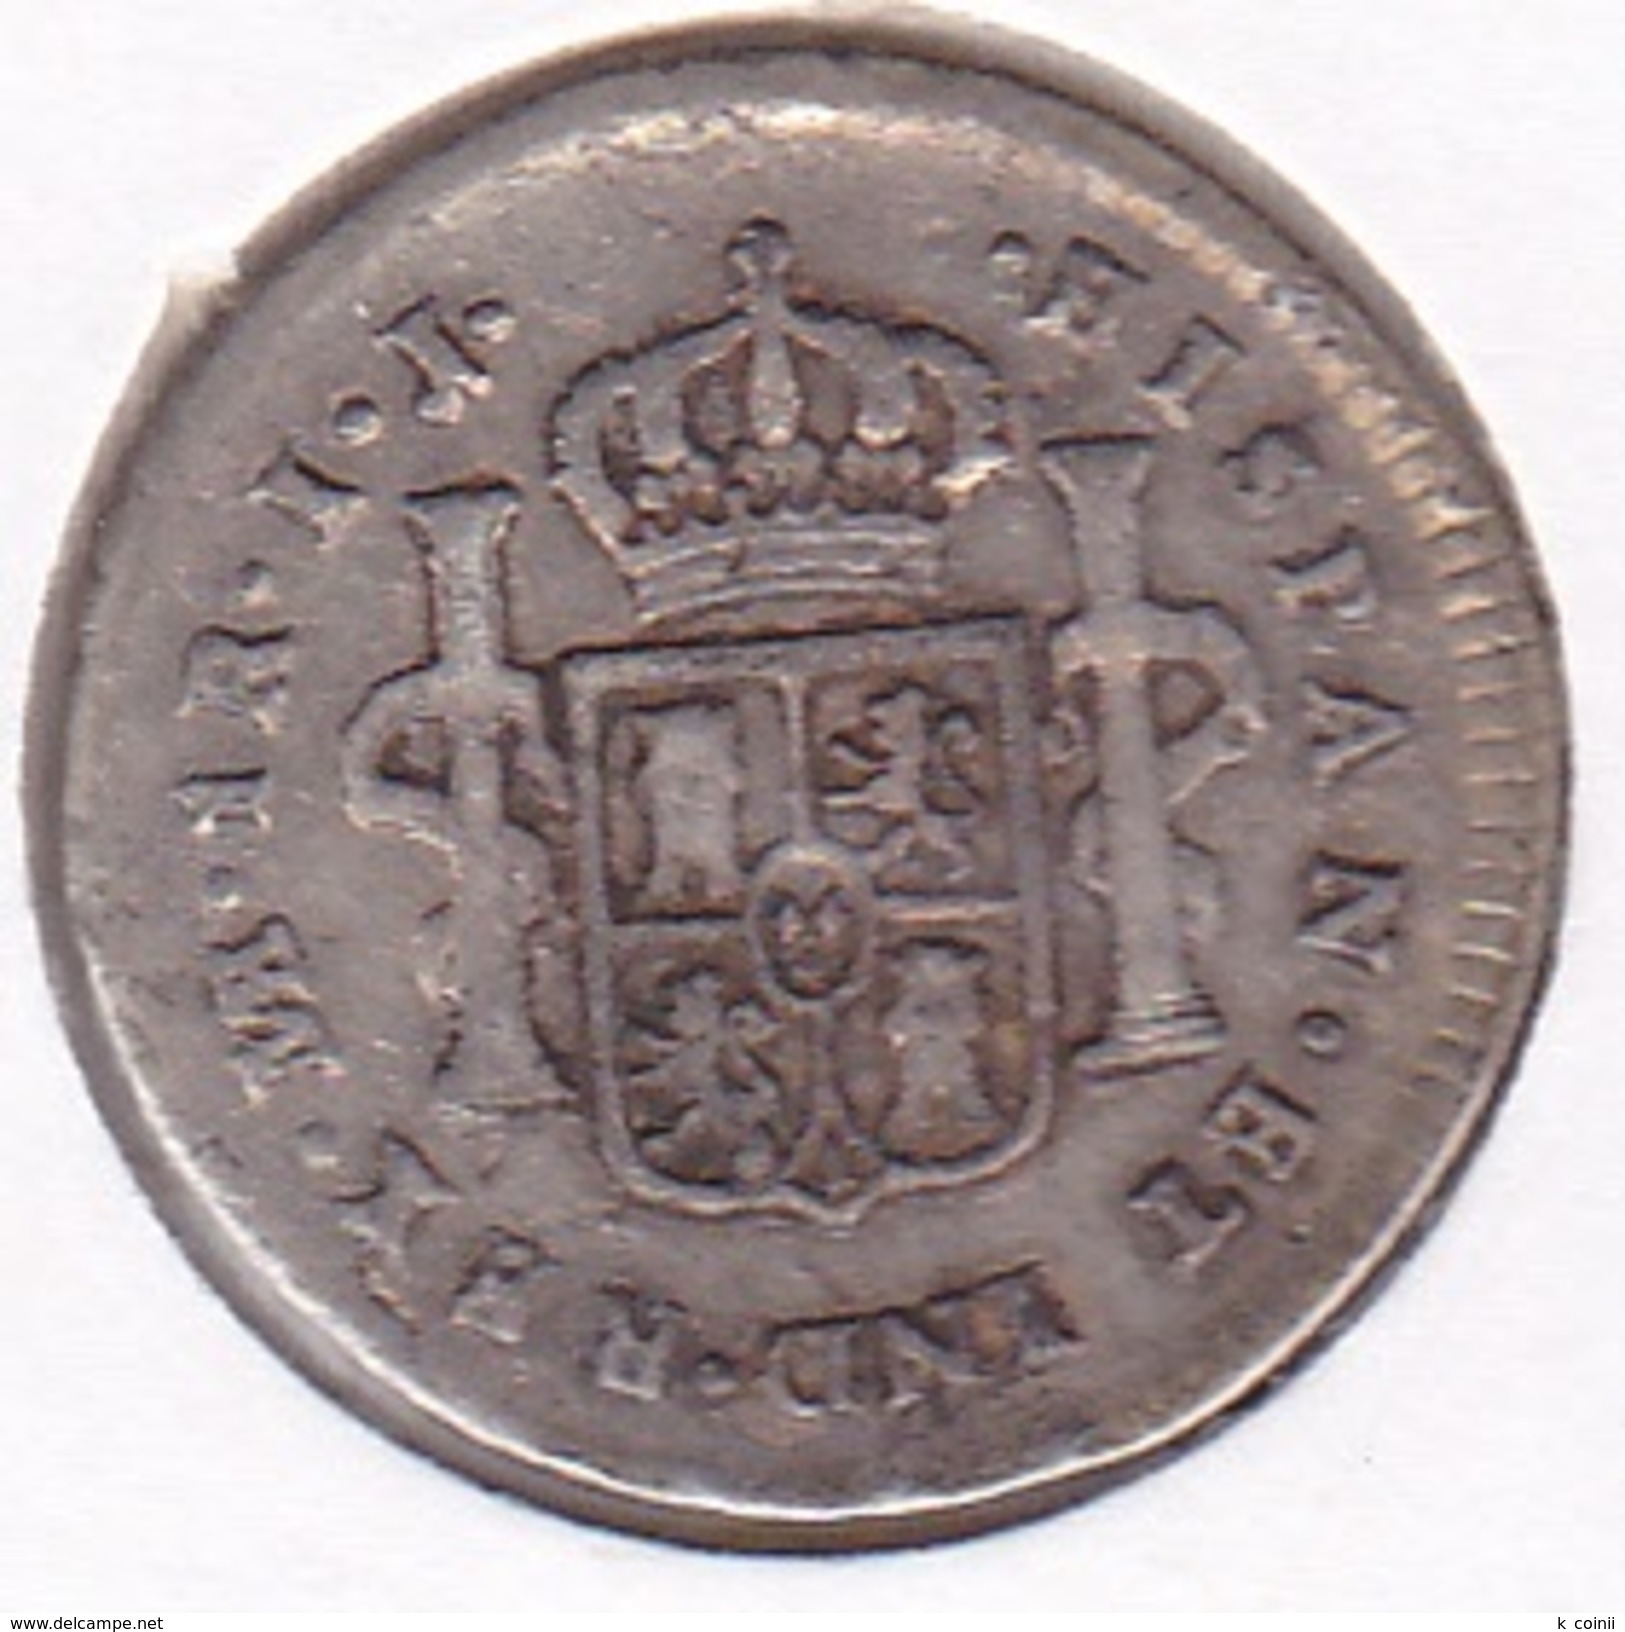 Spain - 1 Real 1789 - Very Fine - Primeras Acuñaciones